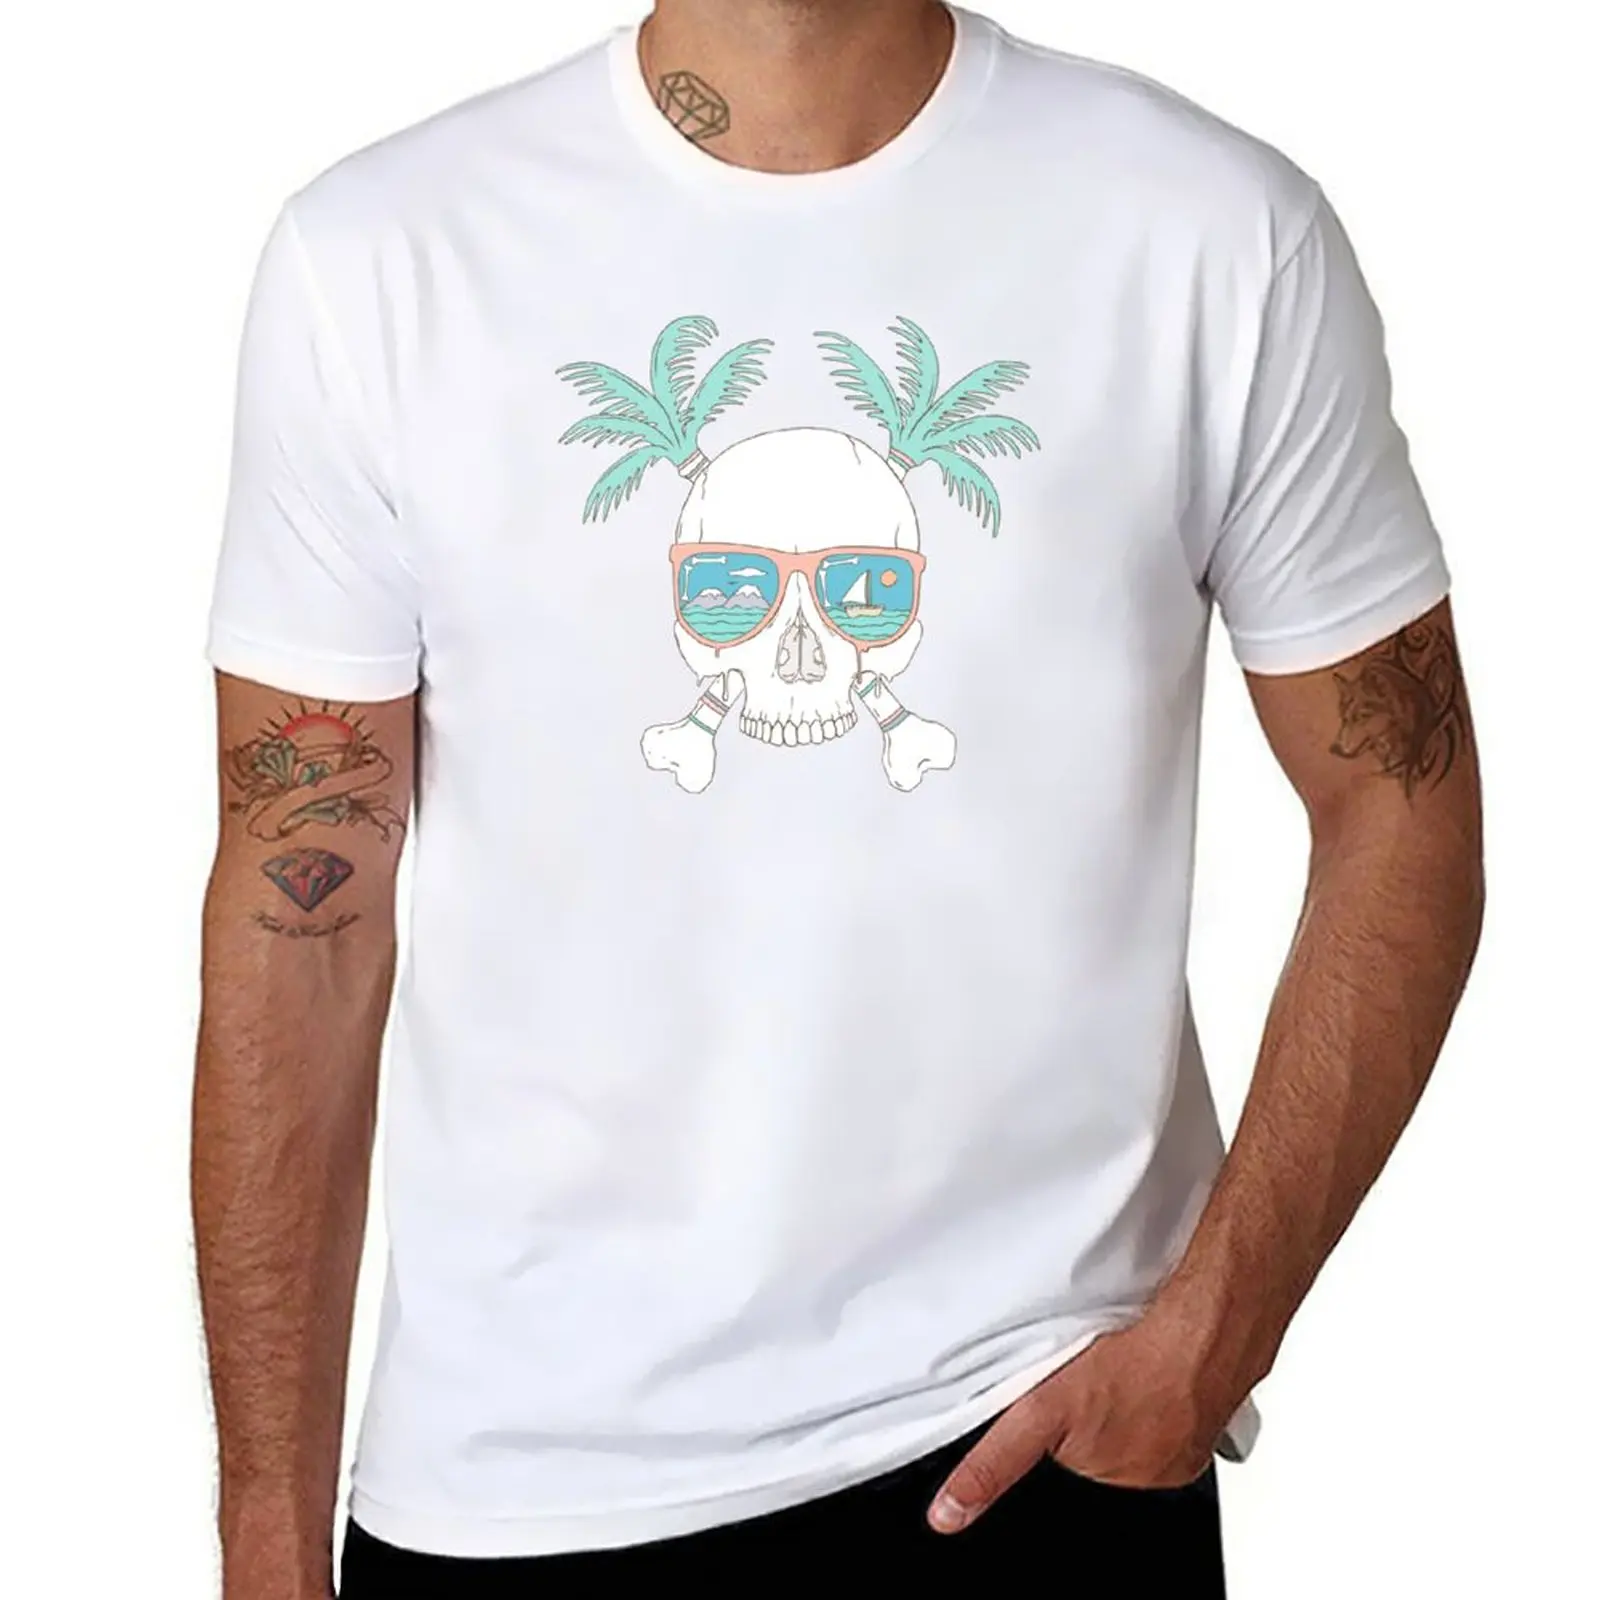 

Летняя футболка для мальчиков Dead of, потрясающая белая мужская тренировочная футболка с графическим принтом